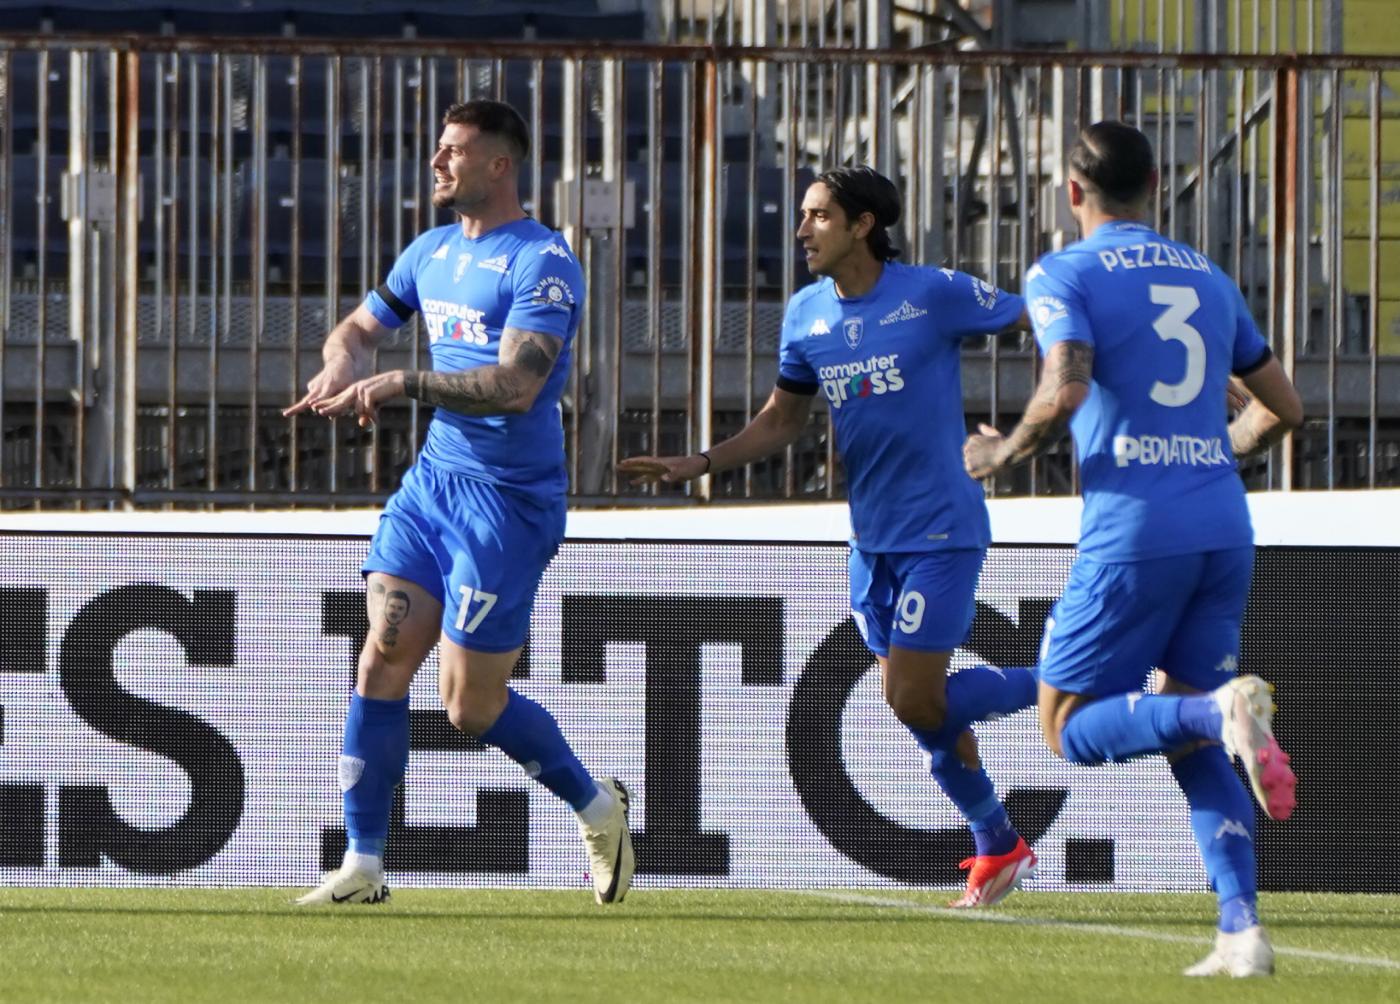 L'Empoli esulta dopo il gol di Cerri al Napoli